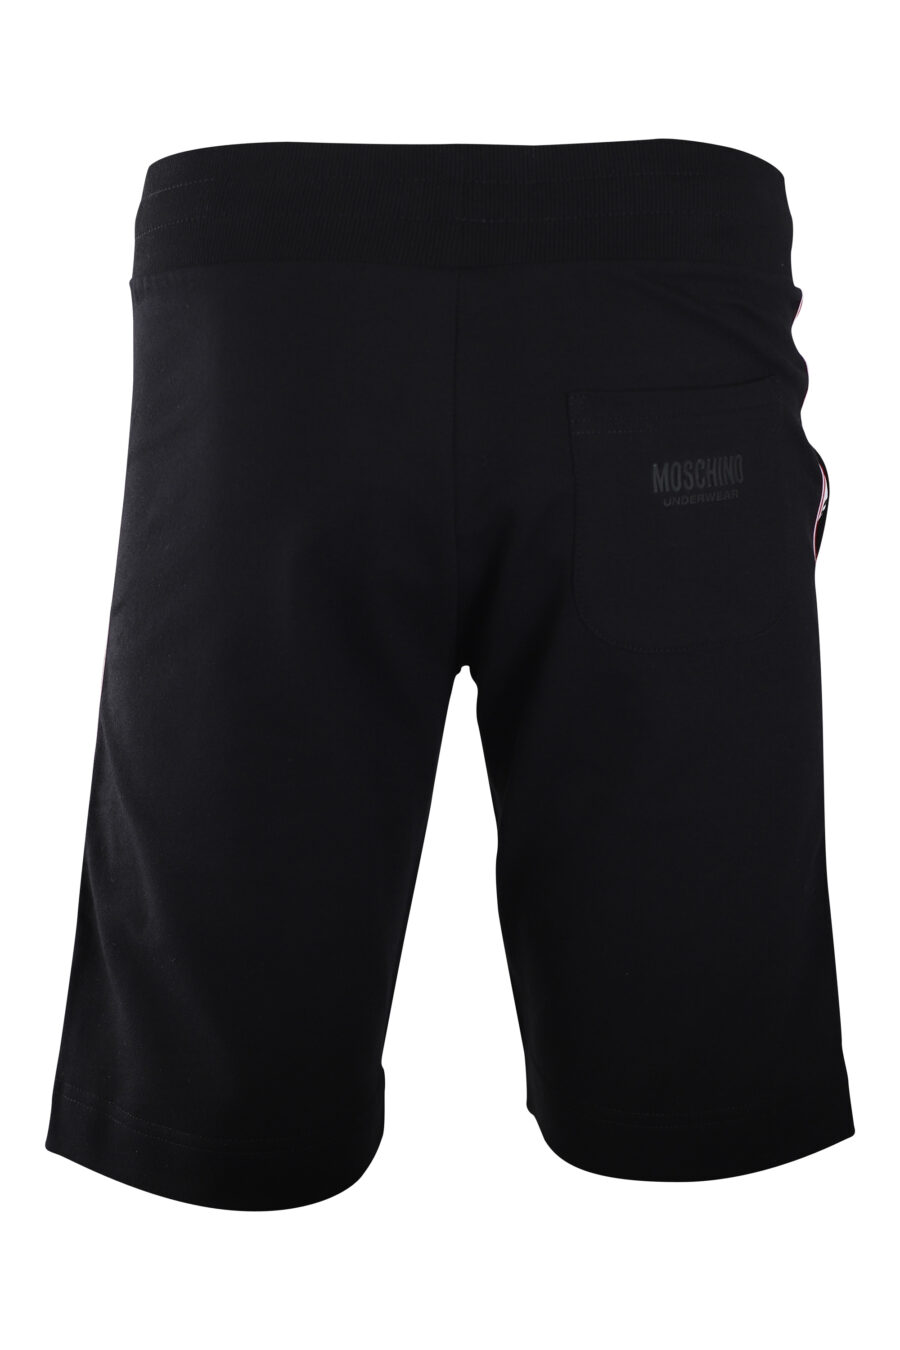 Pantalón de chándal negro con logo laterales "underbear" - IMG 2237